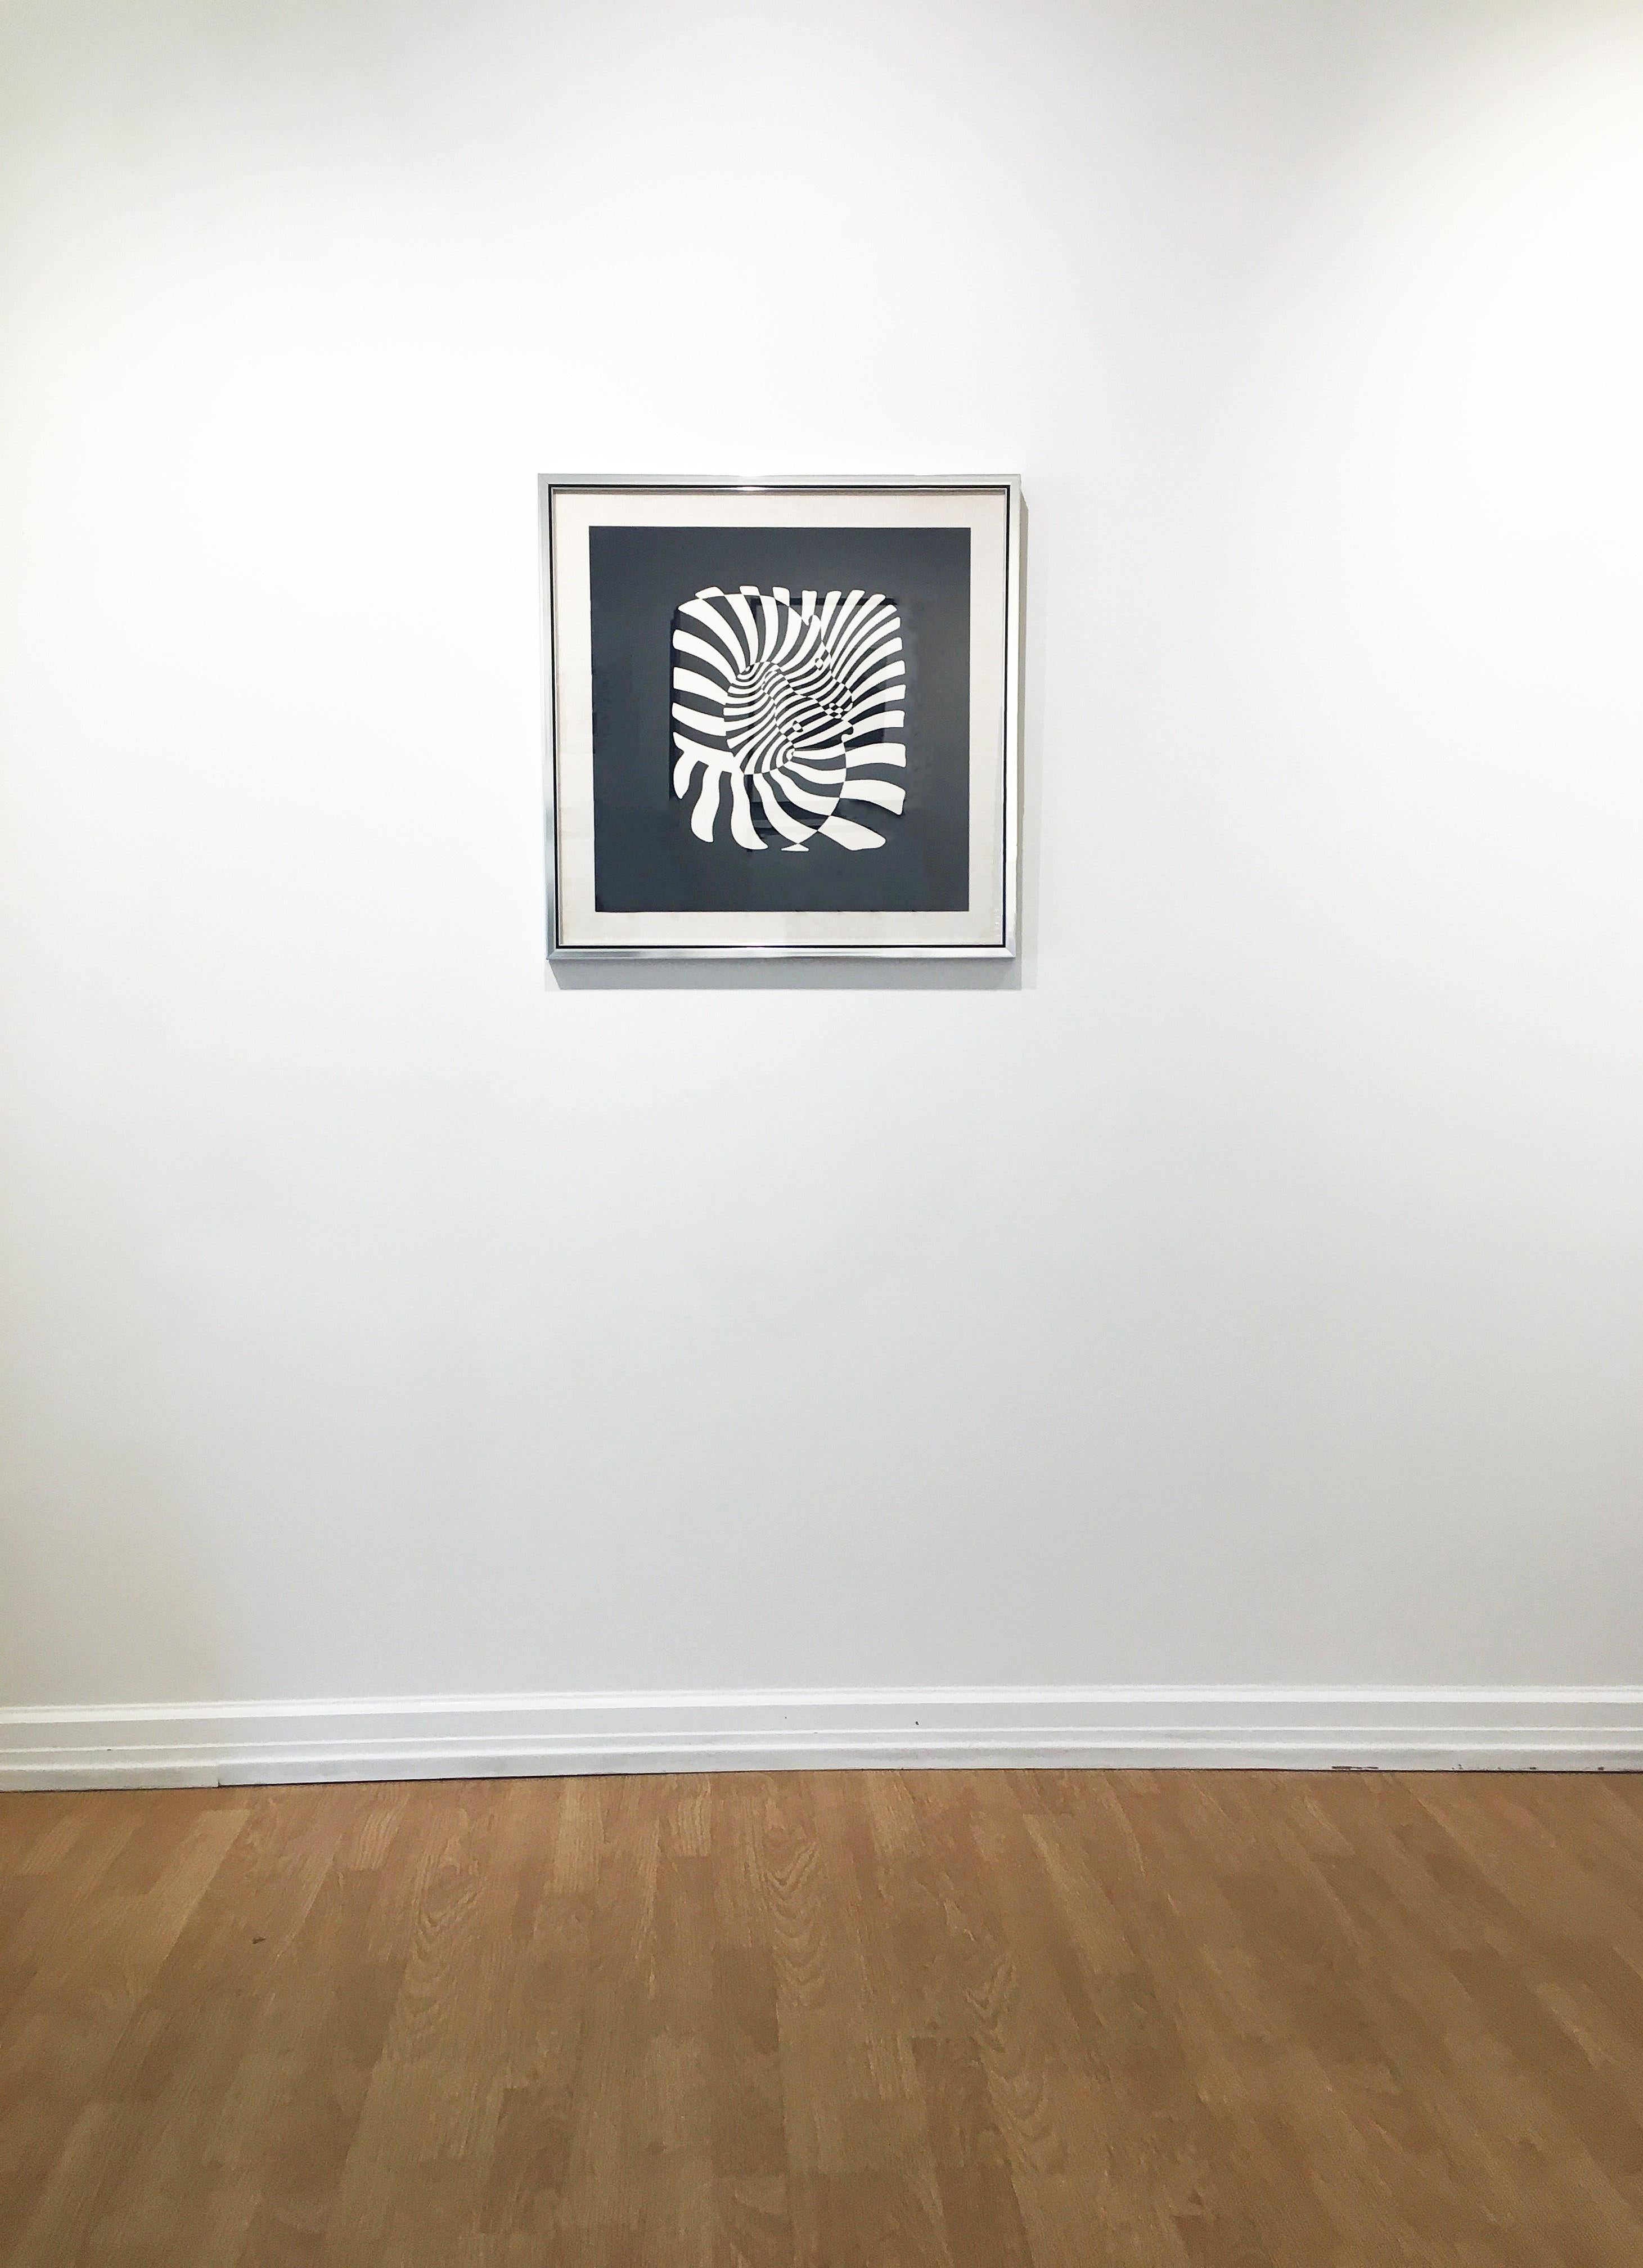 « Zebra Heads (White on Black »):: 1932-1942:: par le père de l'Op-art:: Victor Vasarely. Sérigraphie:: Ed. 15/120 cm. Signé au crayon:: 19::5 x 19::5 pouces / Cadre : 24::5 x 24::5 pouces. Utilisant des bandes blanches sur du papier noir qui créent